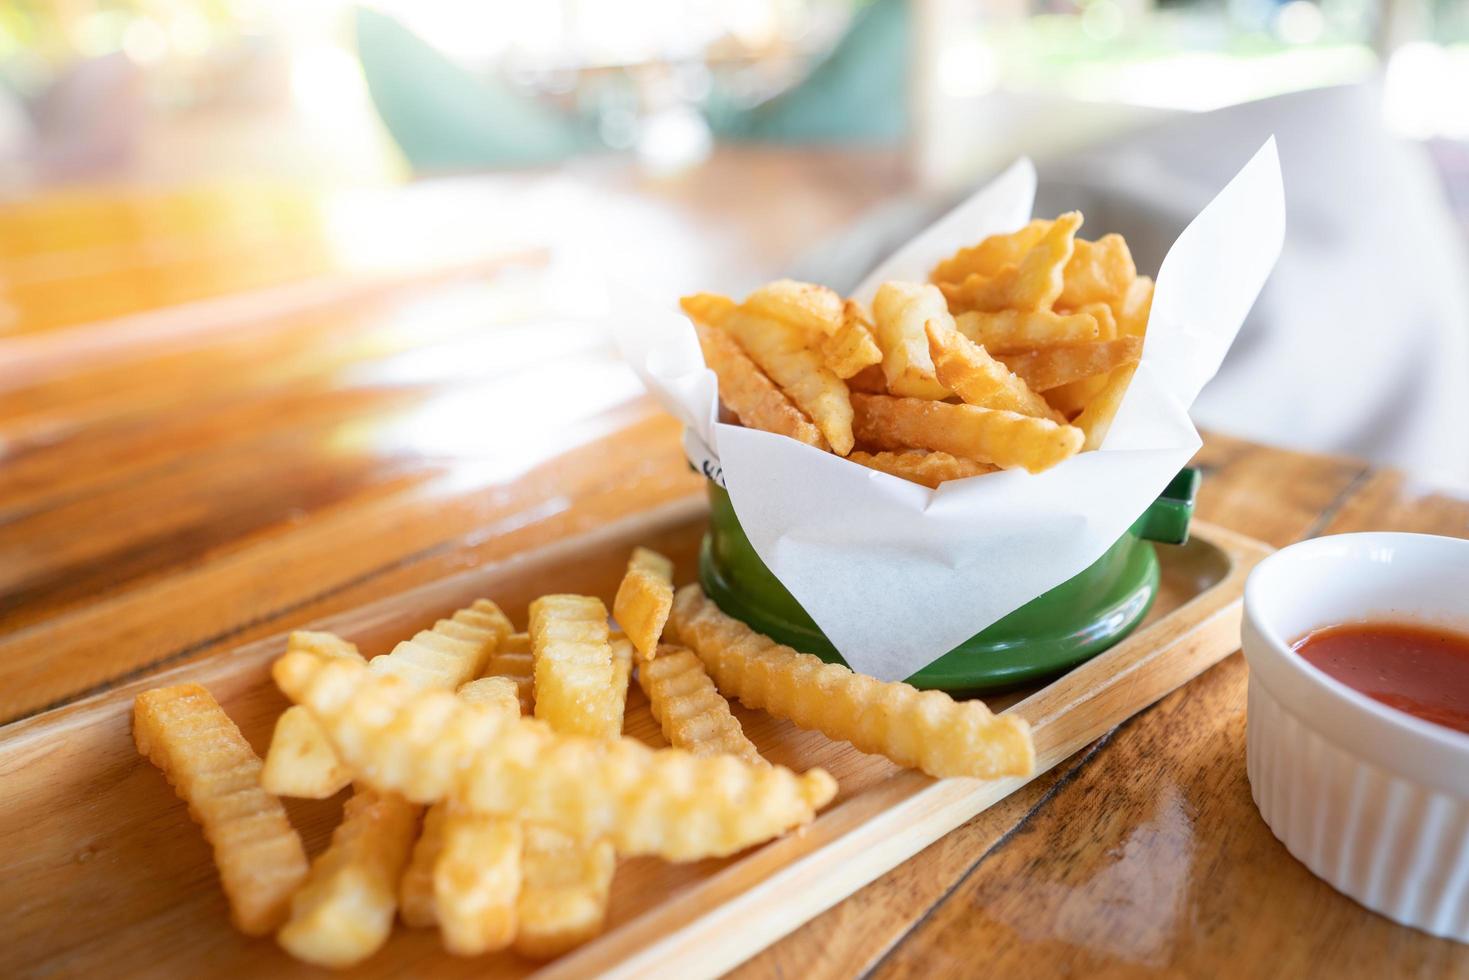 pommes frites i en grön emaljbehållare, på ett thailändskt träbord foto